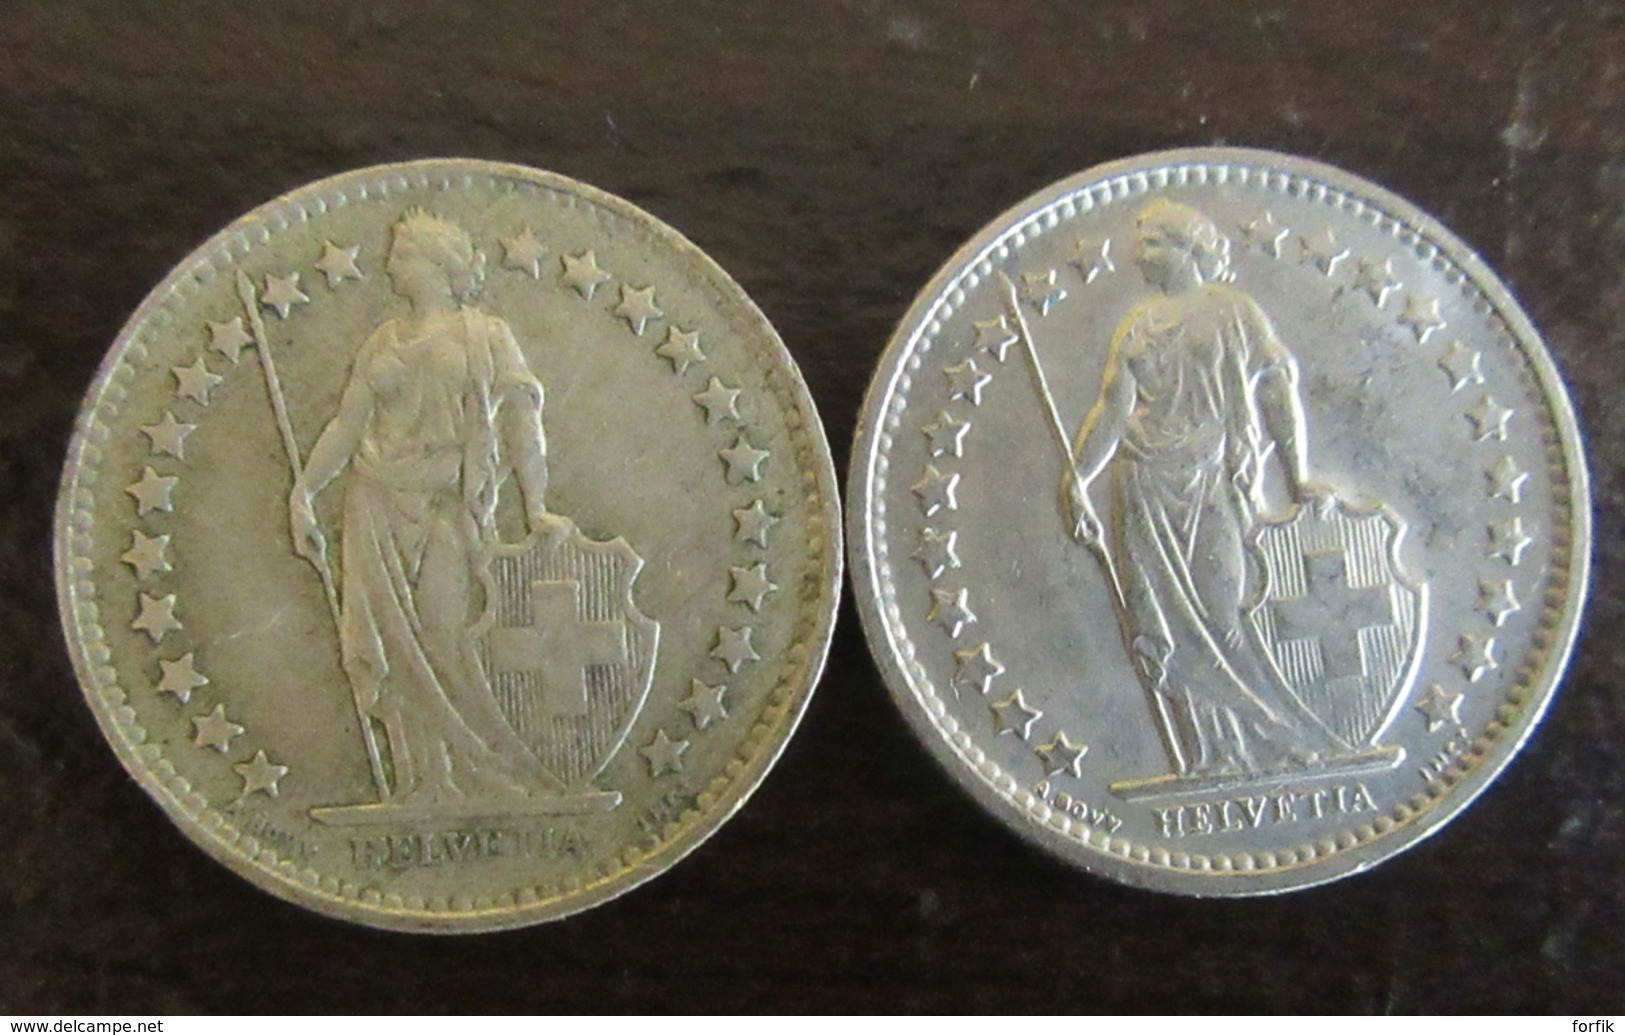 Suisse - Lot de 22 Monnaies 5 cts à 5 Francs dont argent - 1850 à 1989 - TB à TTB / SUP